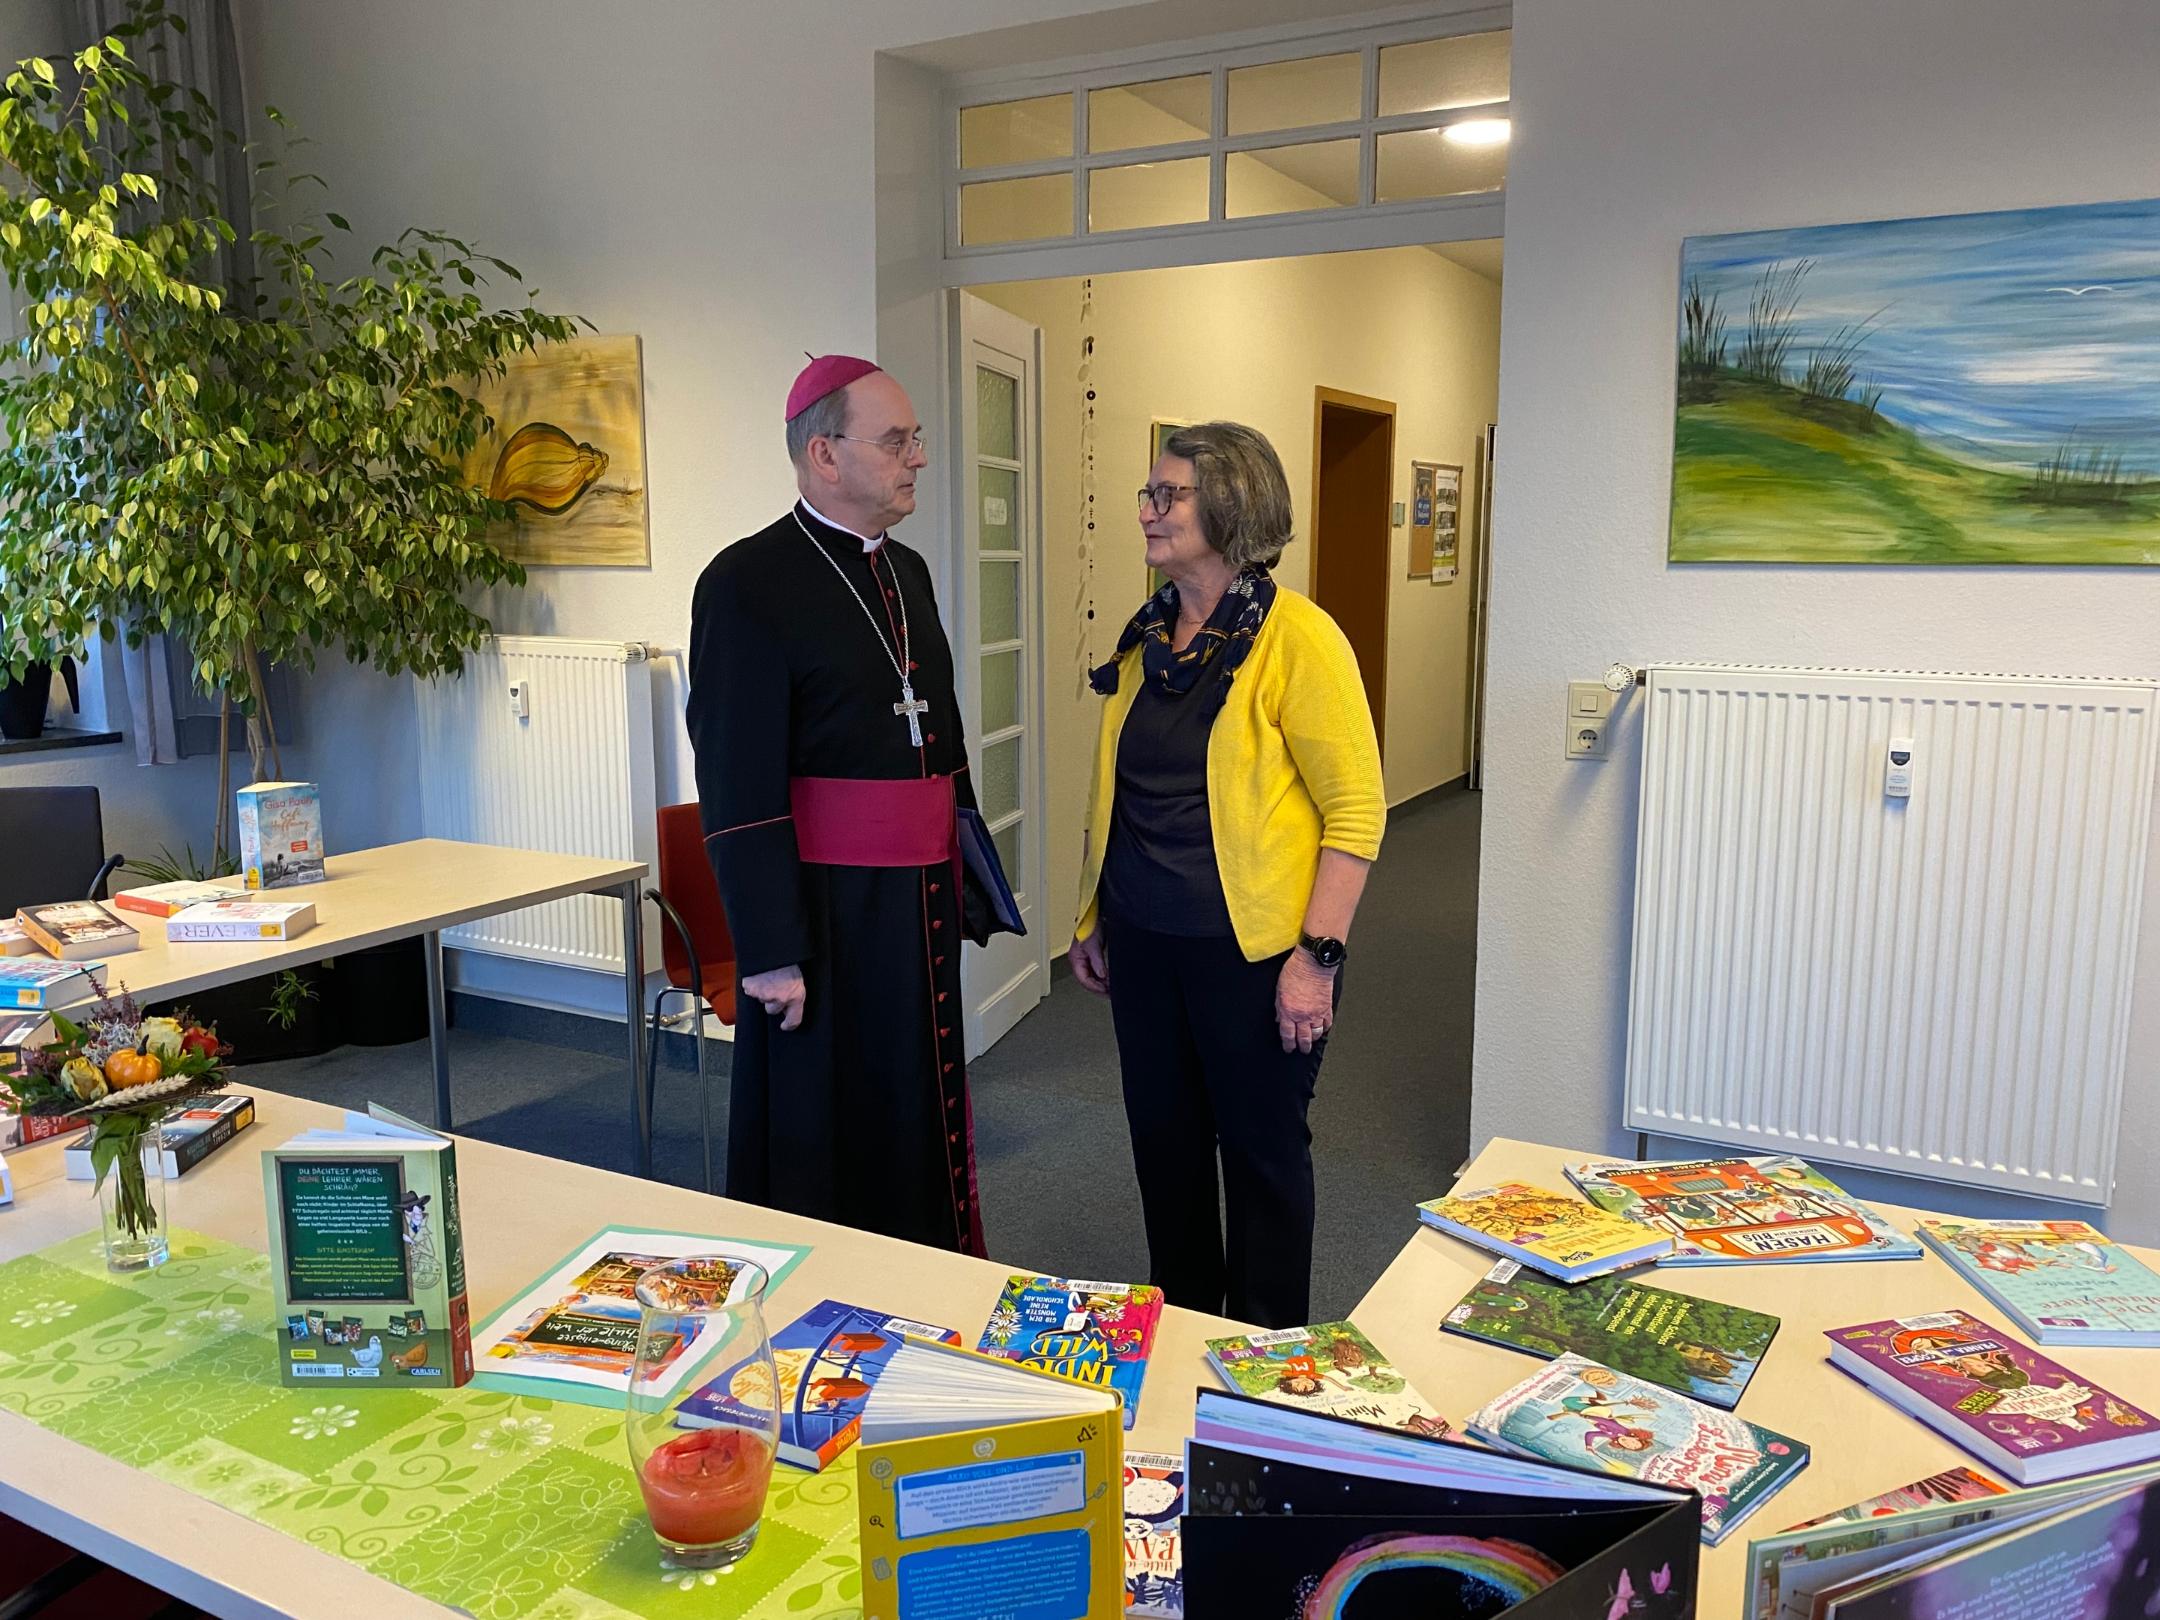 Im Rahmen seiner Visitation besuchte Weihbischof Brahm auch die Katholische Öffentliche Bücherei im Gemeindezentrum Ochtendung.